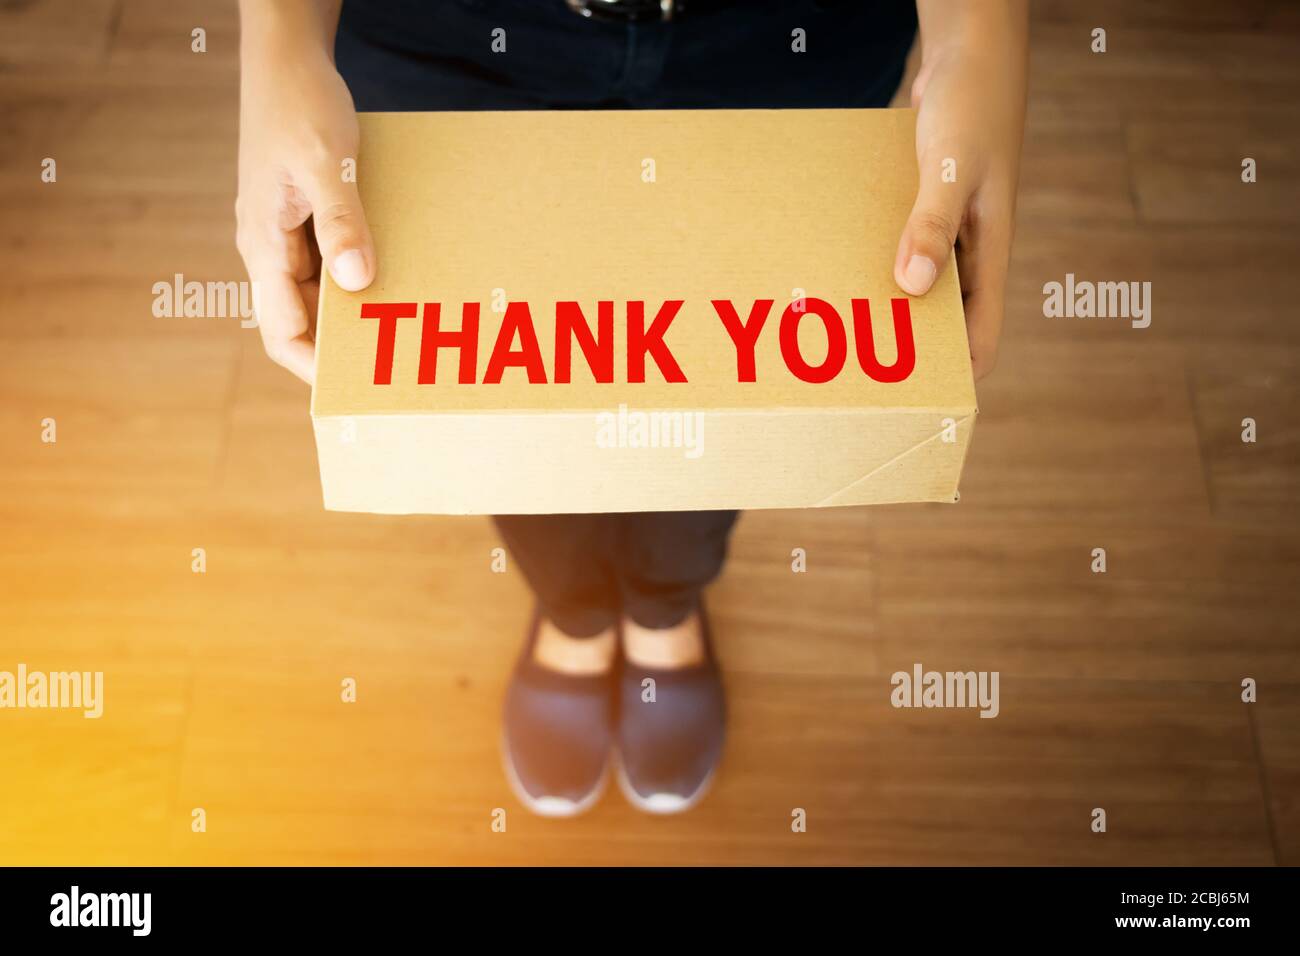 Danksagung für Kunden, die mit Ihrem Shop-Konzept einkaufen : Danksagung Wort auf einfache Lieferung braune Box in der Hand des freundlichen Boten Stockfoto